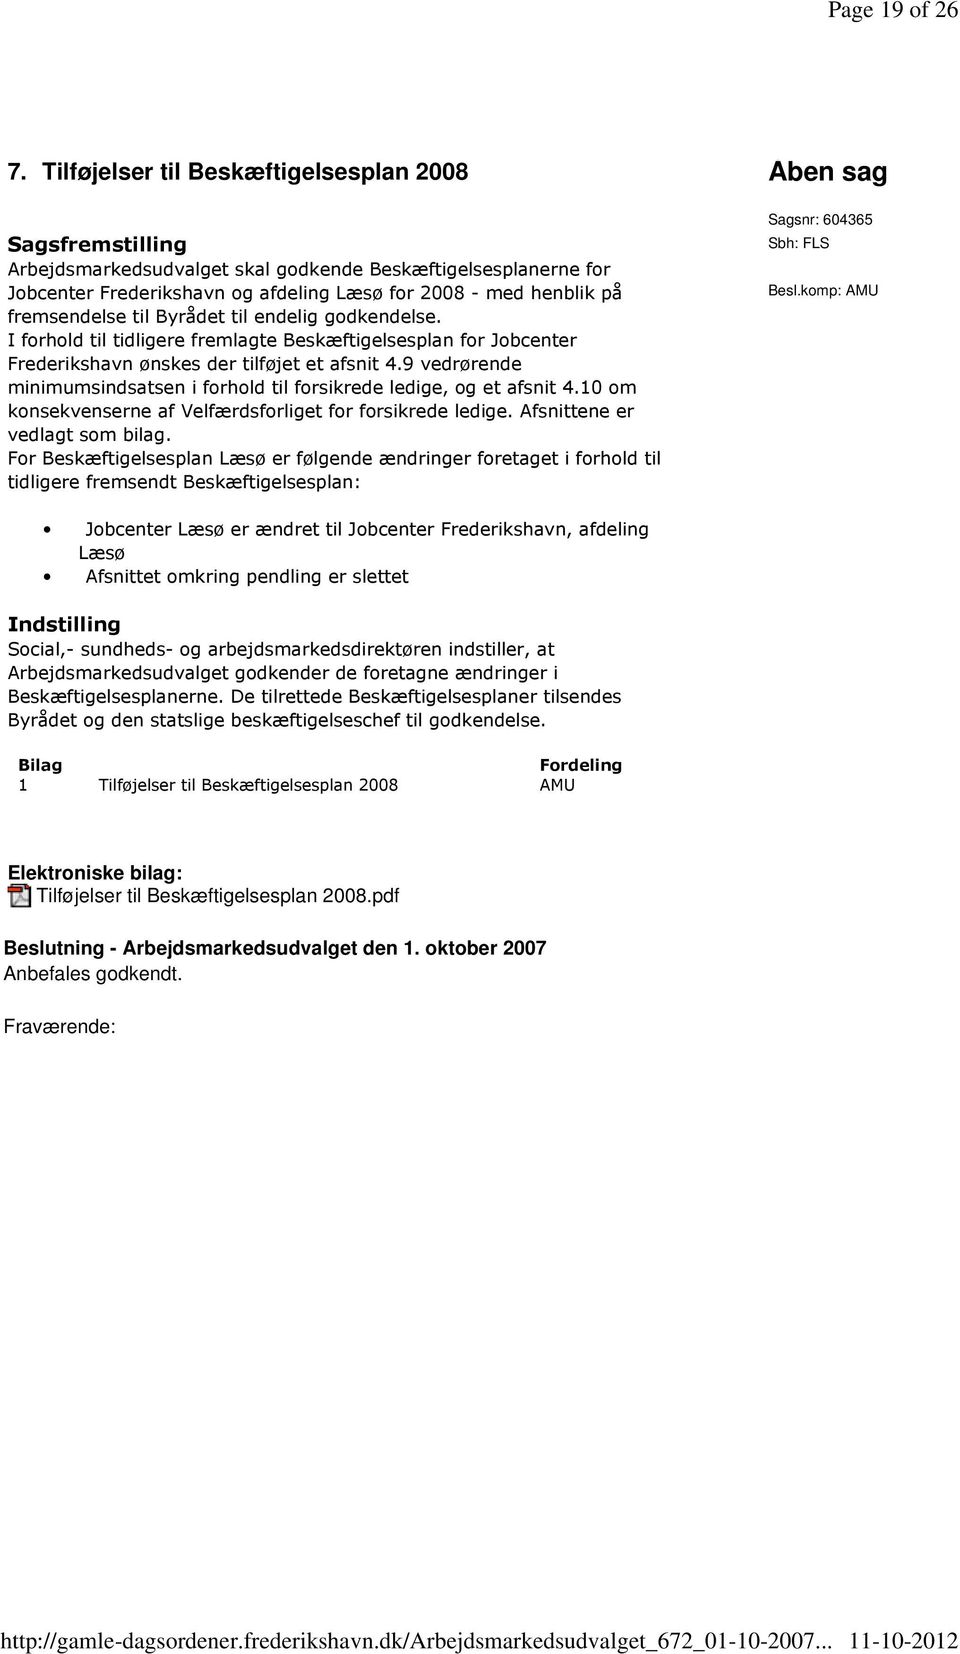 fremsendelse til Byrådet til endelig godkendelse. I forhold til tidligere fremlagte Beskæftigelsesplan for Jobcenter Frederikshavn ønskes der tilføjet et afsnit 4.